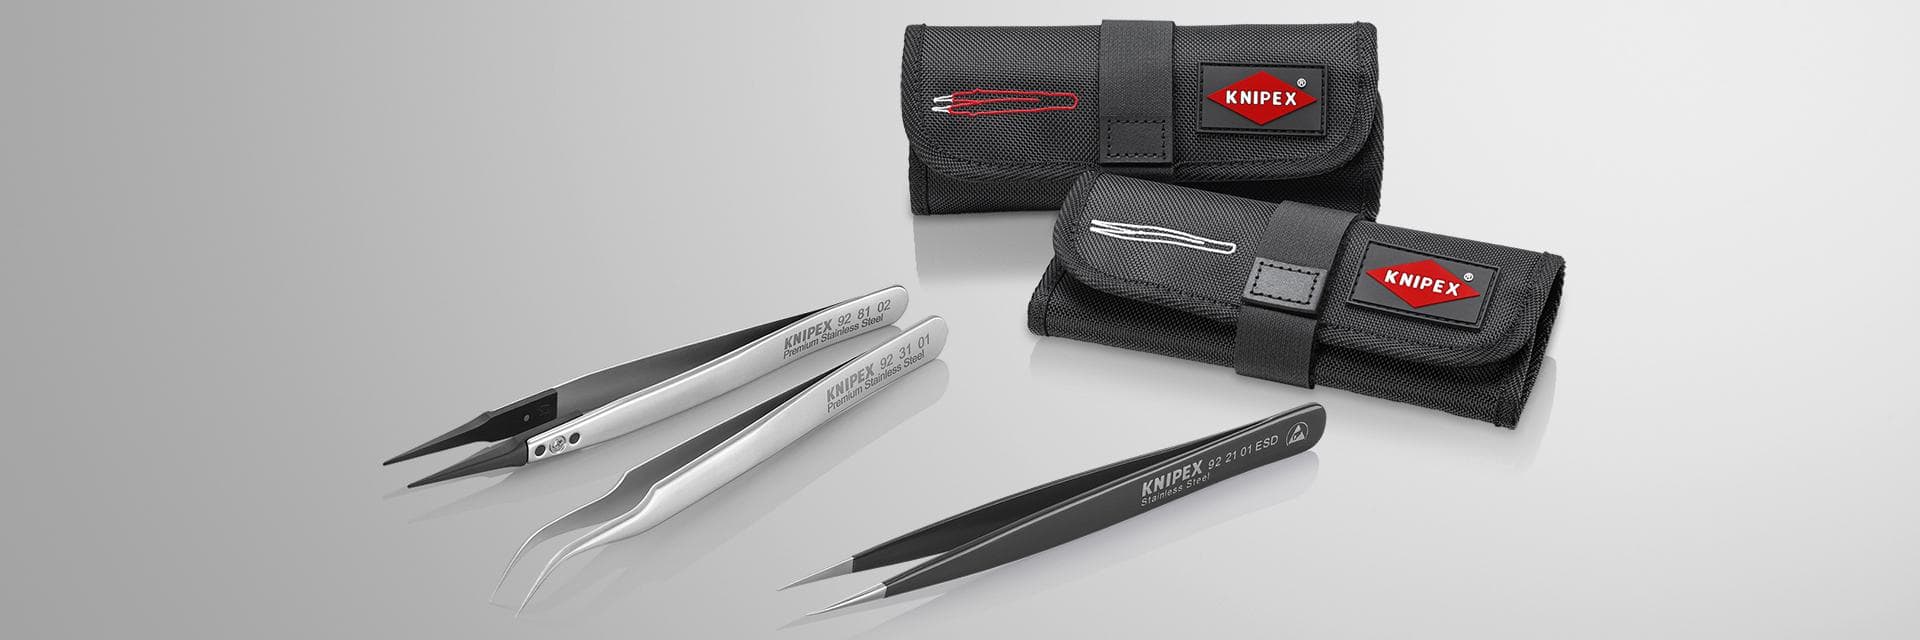 Knipex 86 01 250 - Tenaza llave Knipex 250 mm con mangos PVC y acabado  negro atramentado